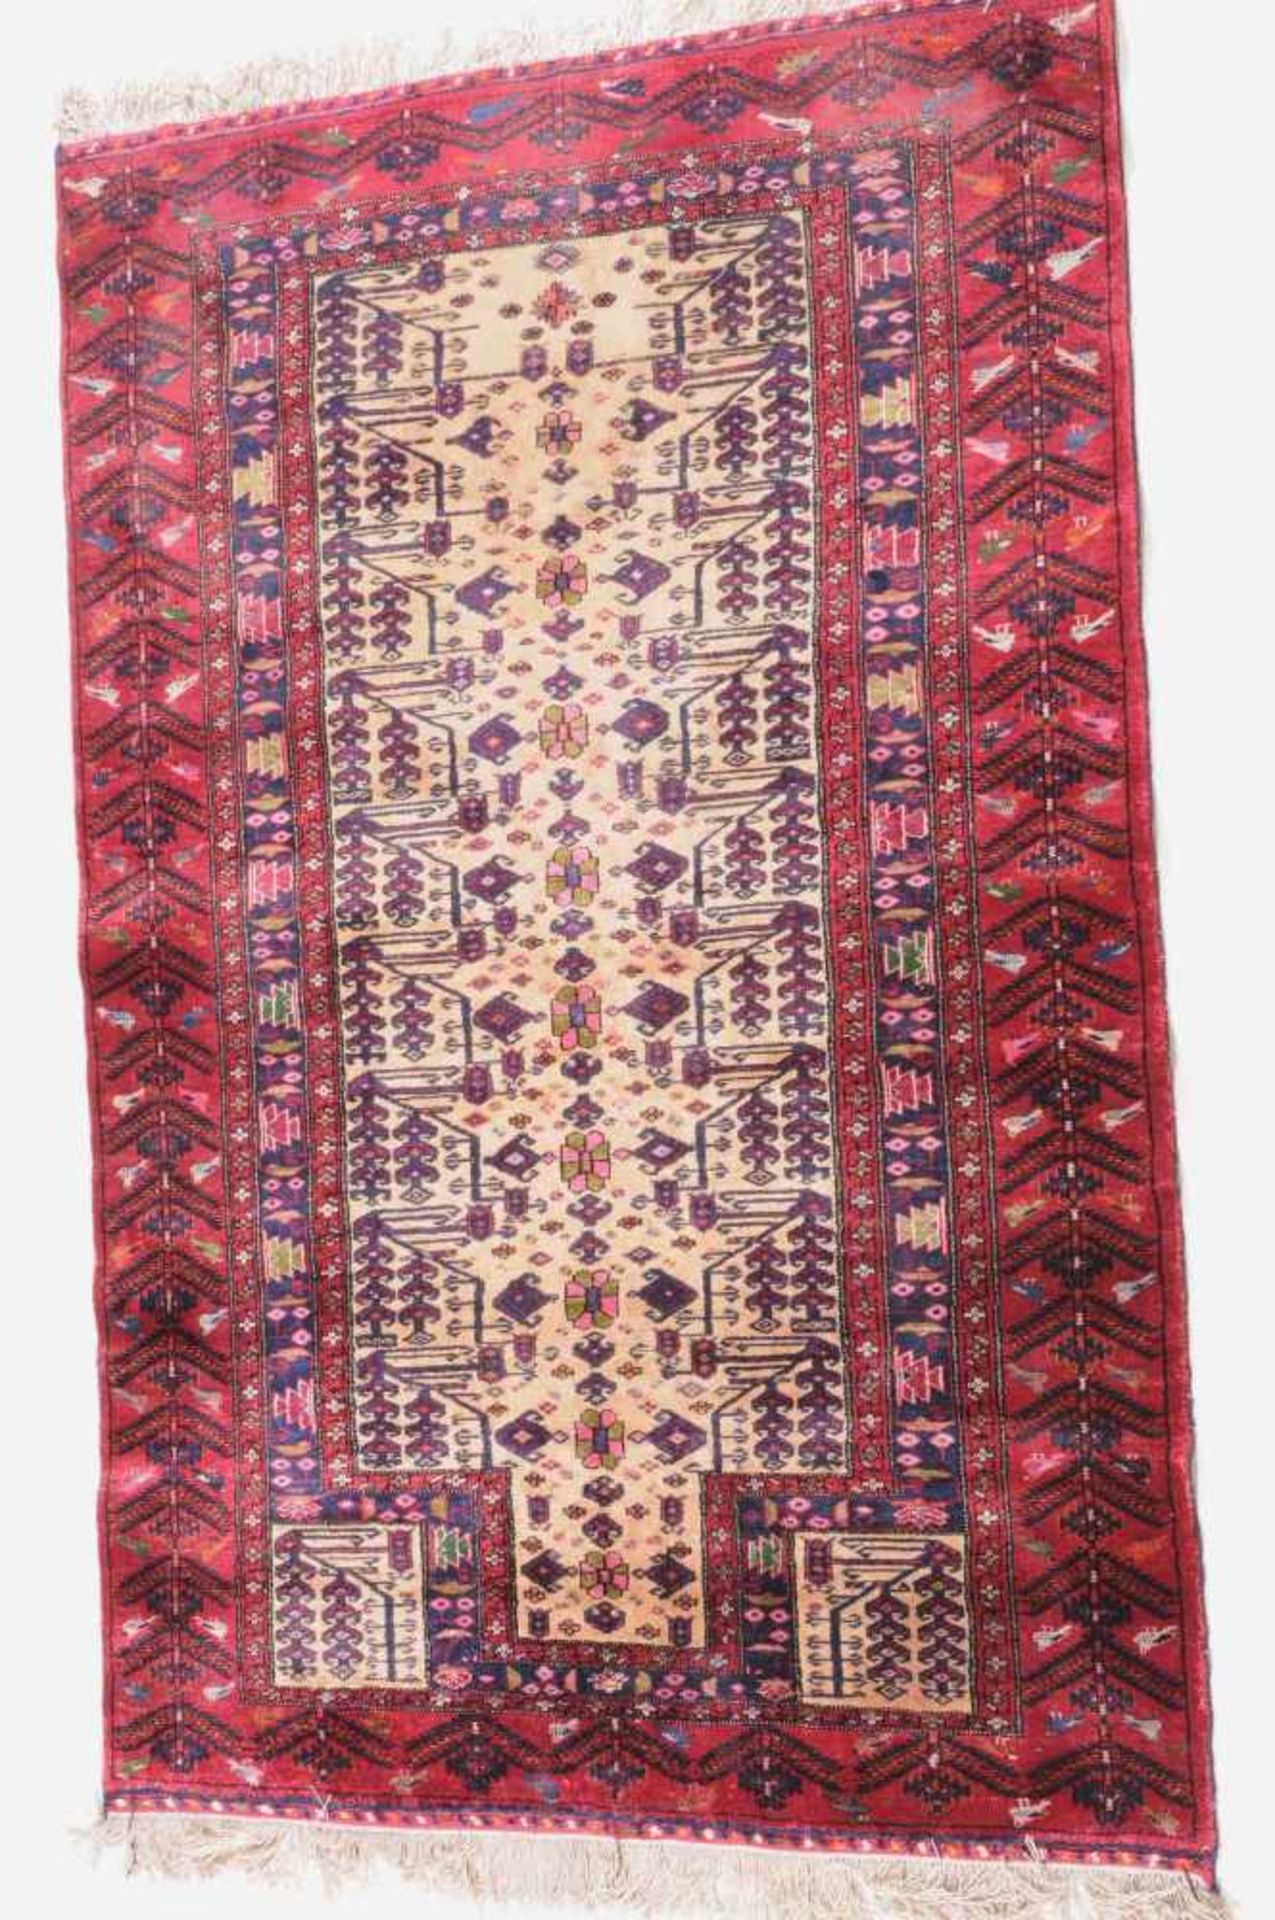 Beluch-SeideO-Persien, um 1960. Die hellgelbe Gebetsnische (Mihrab) ist mit Blüten und Blattranken